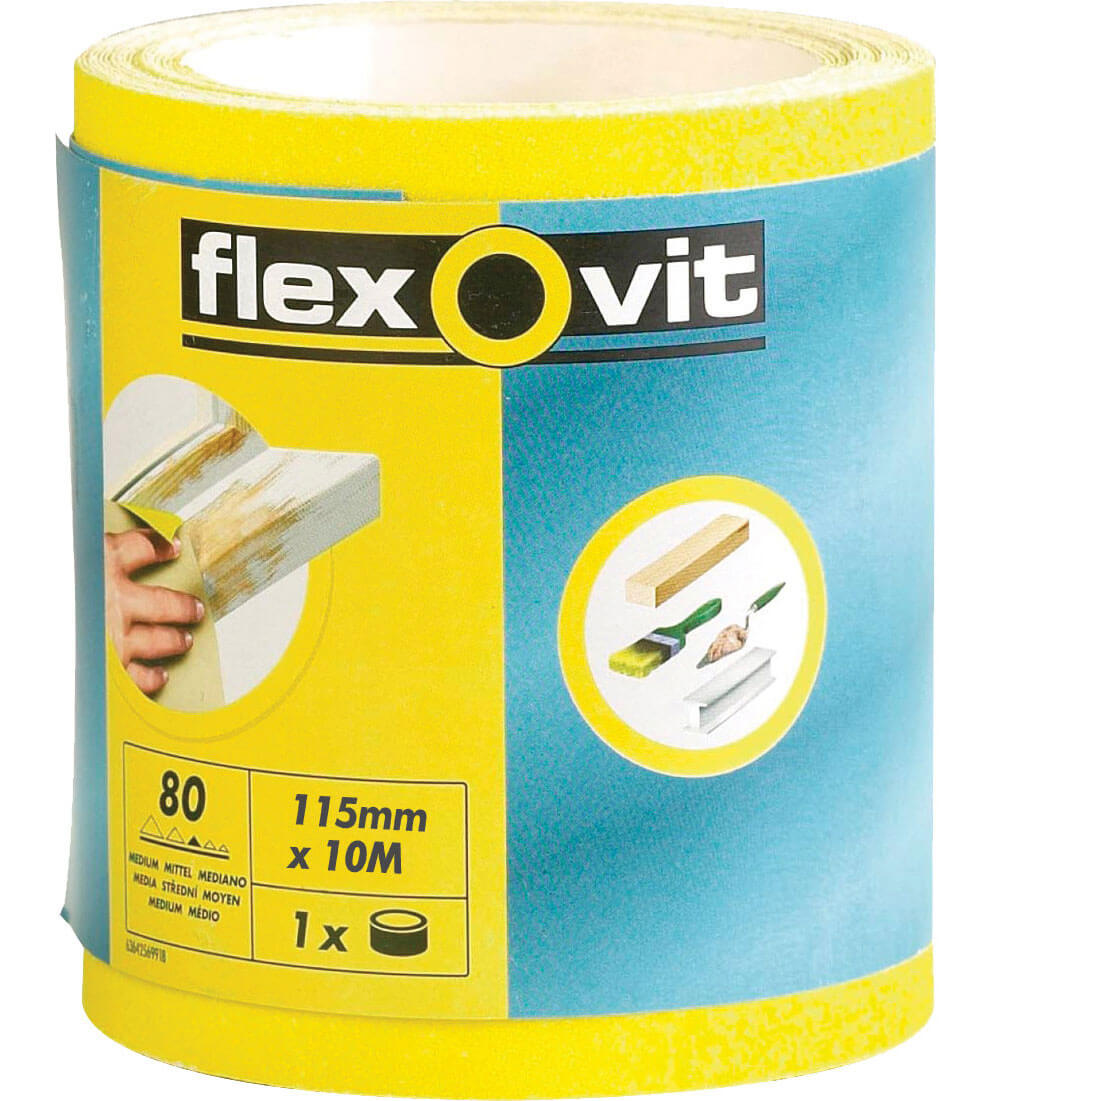 Image of Flexovit High Performance Sanding Roll 115mm 10m 80g